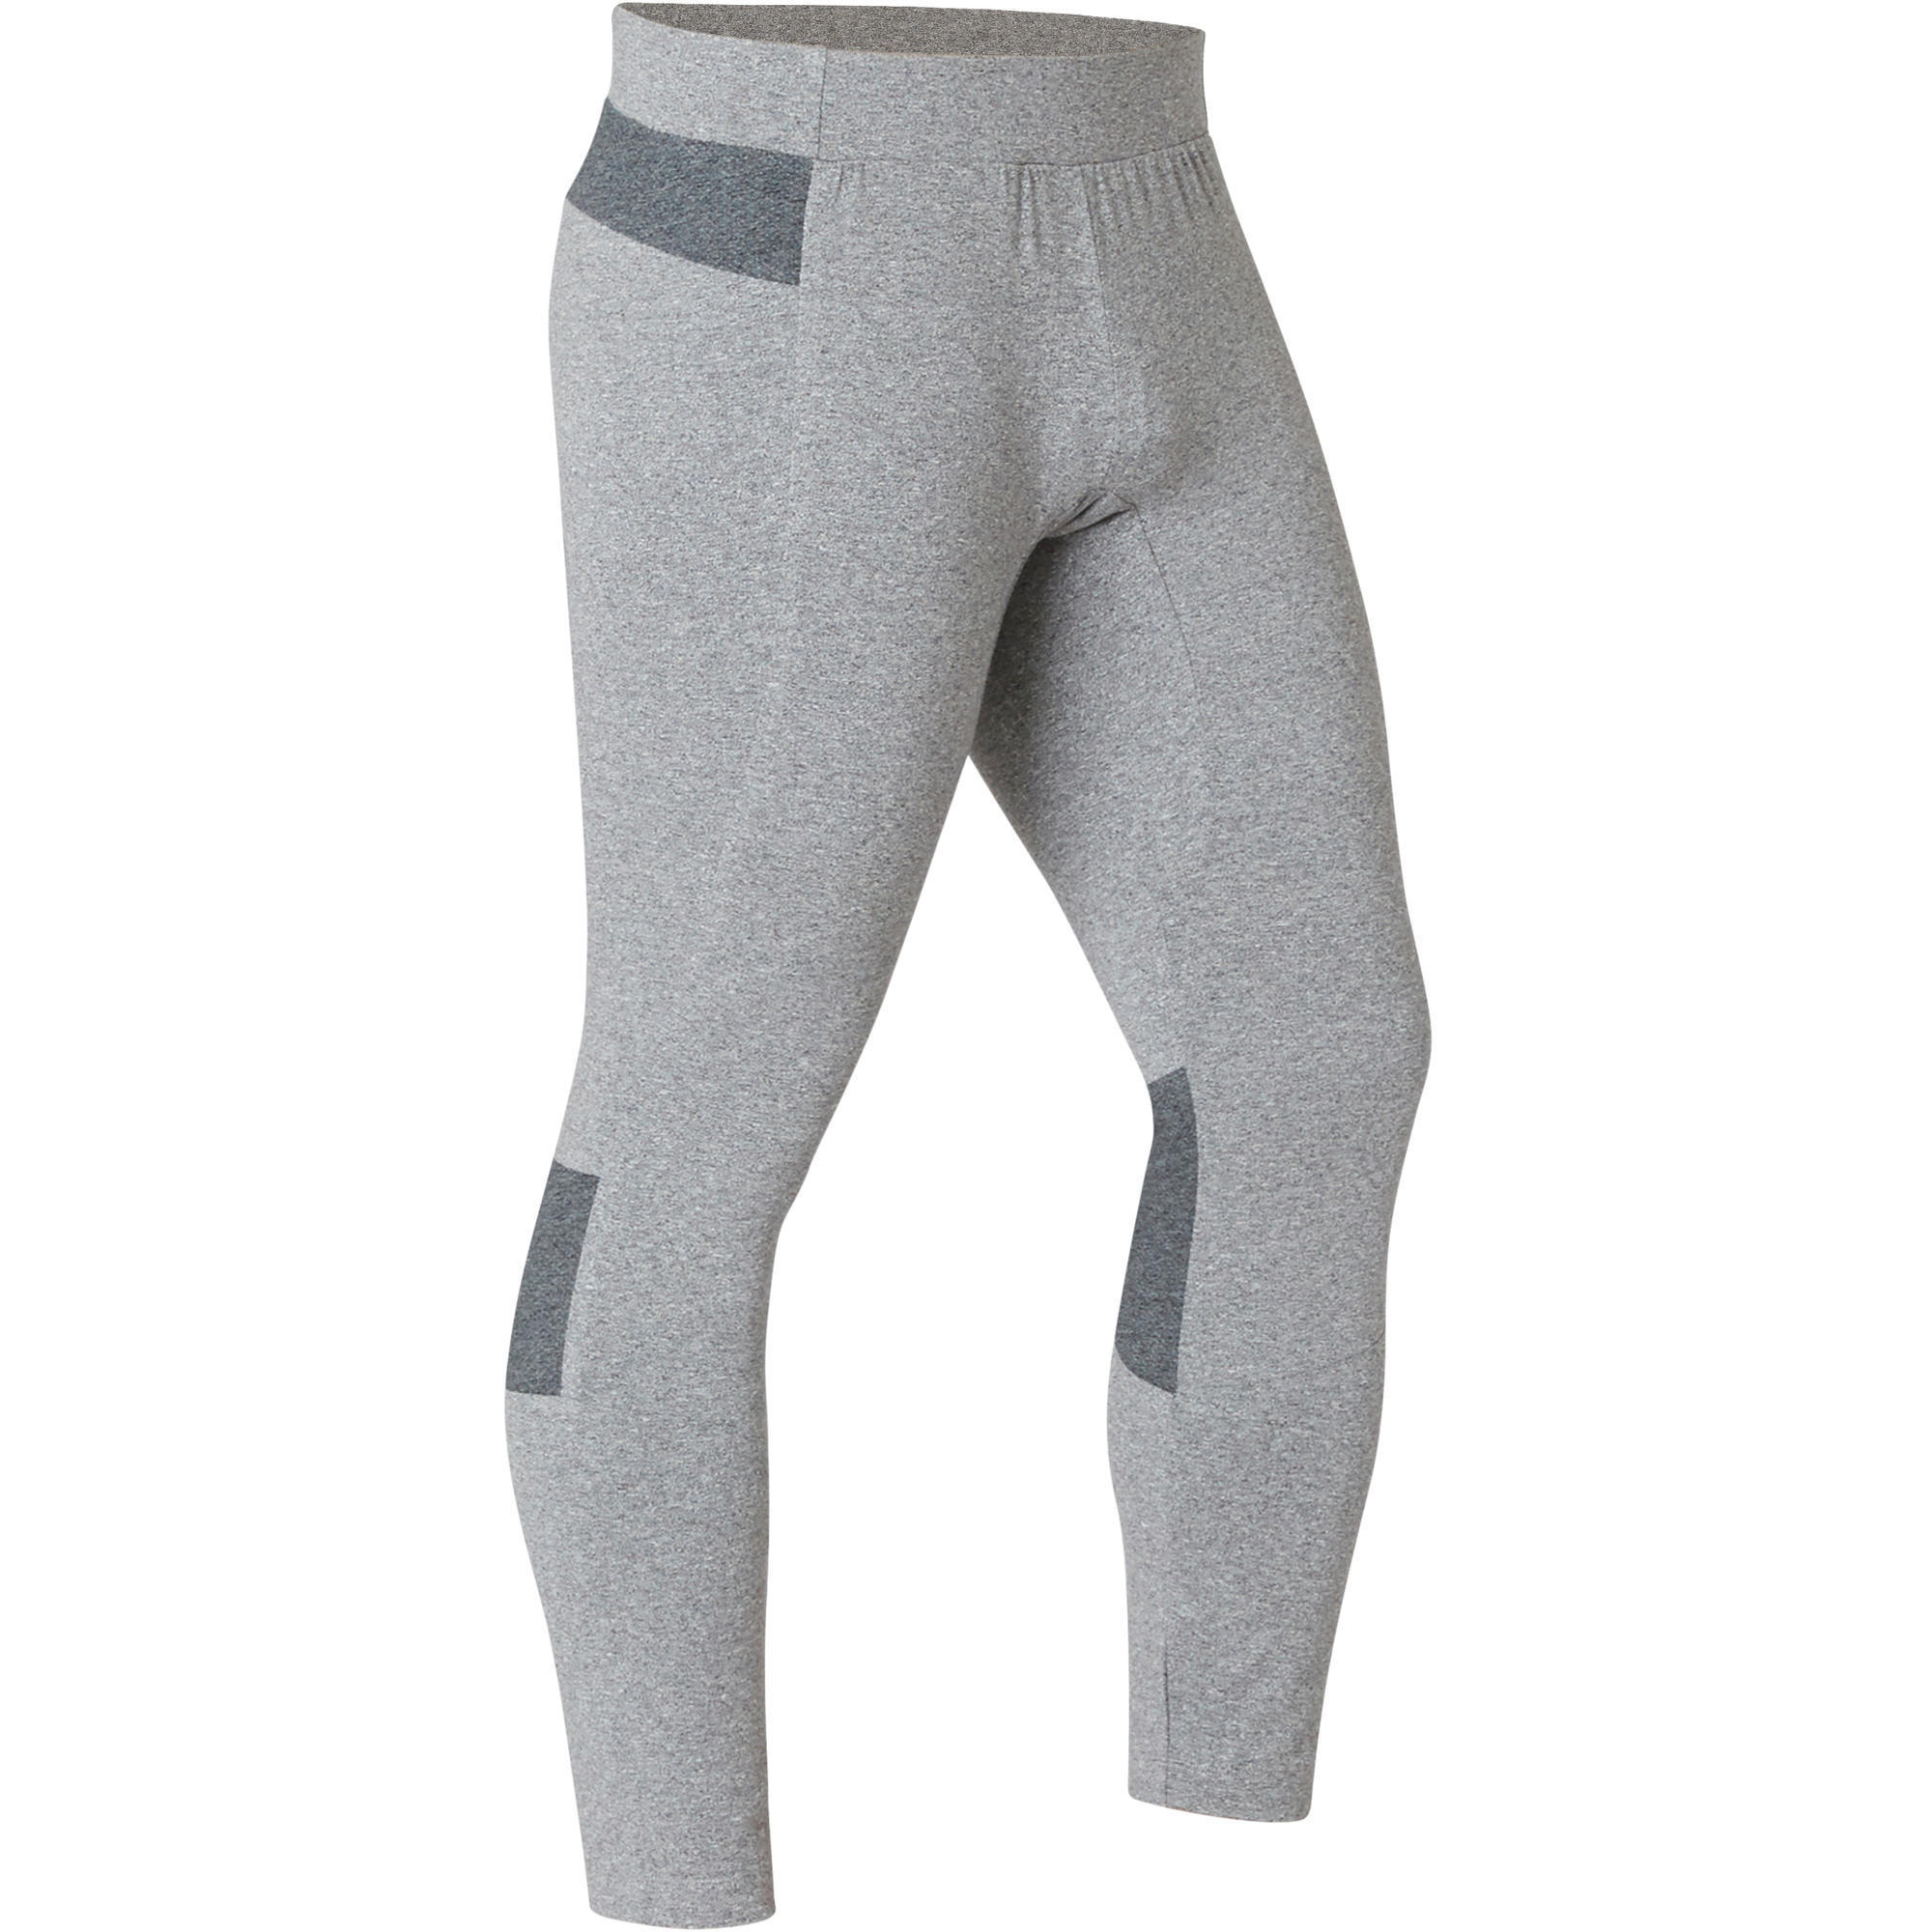 grey gym tights